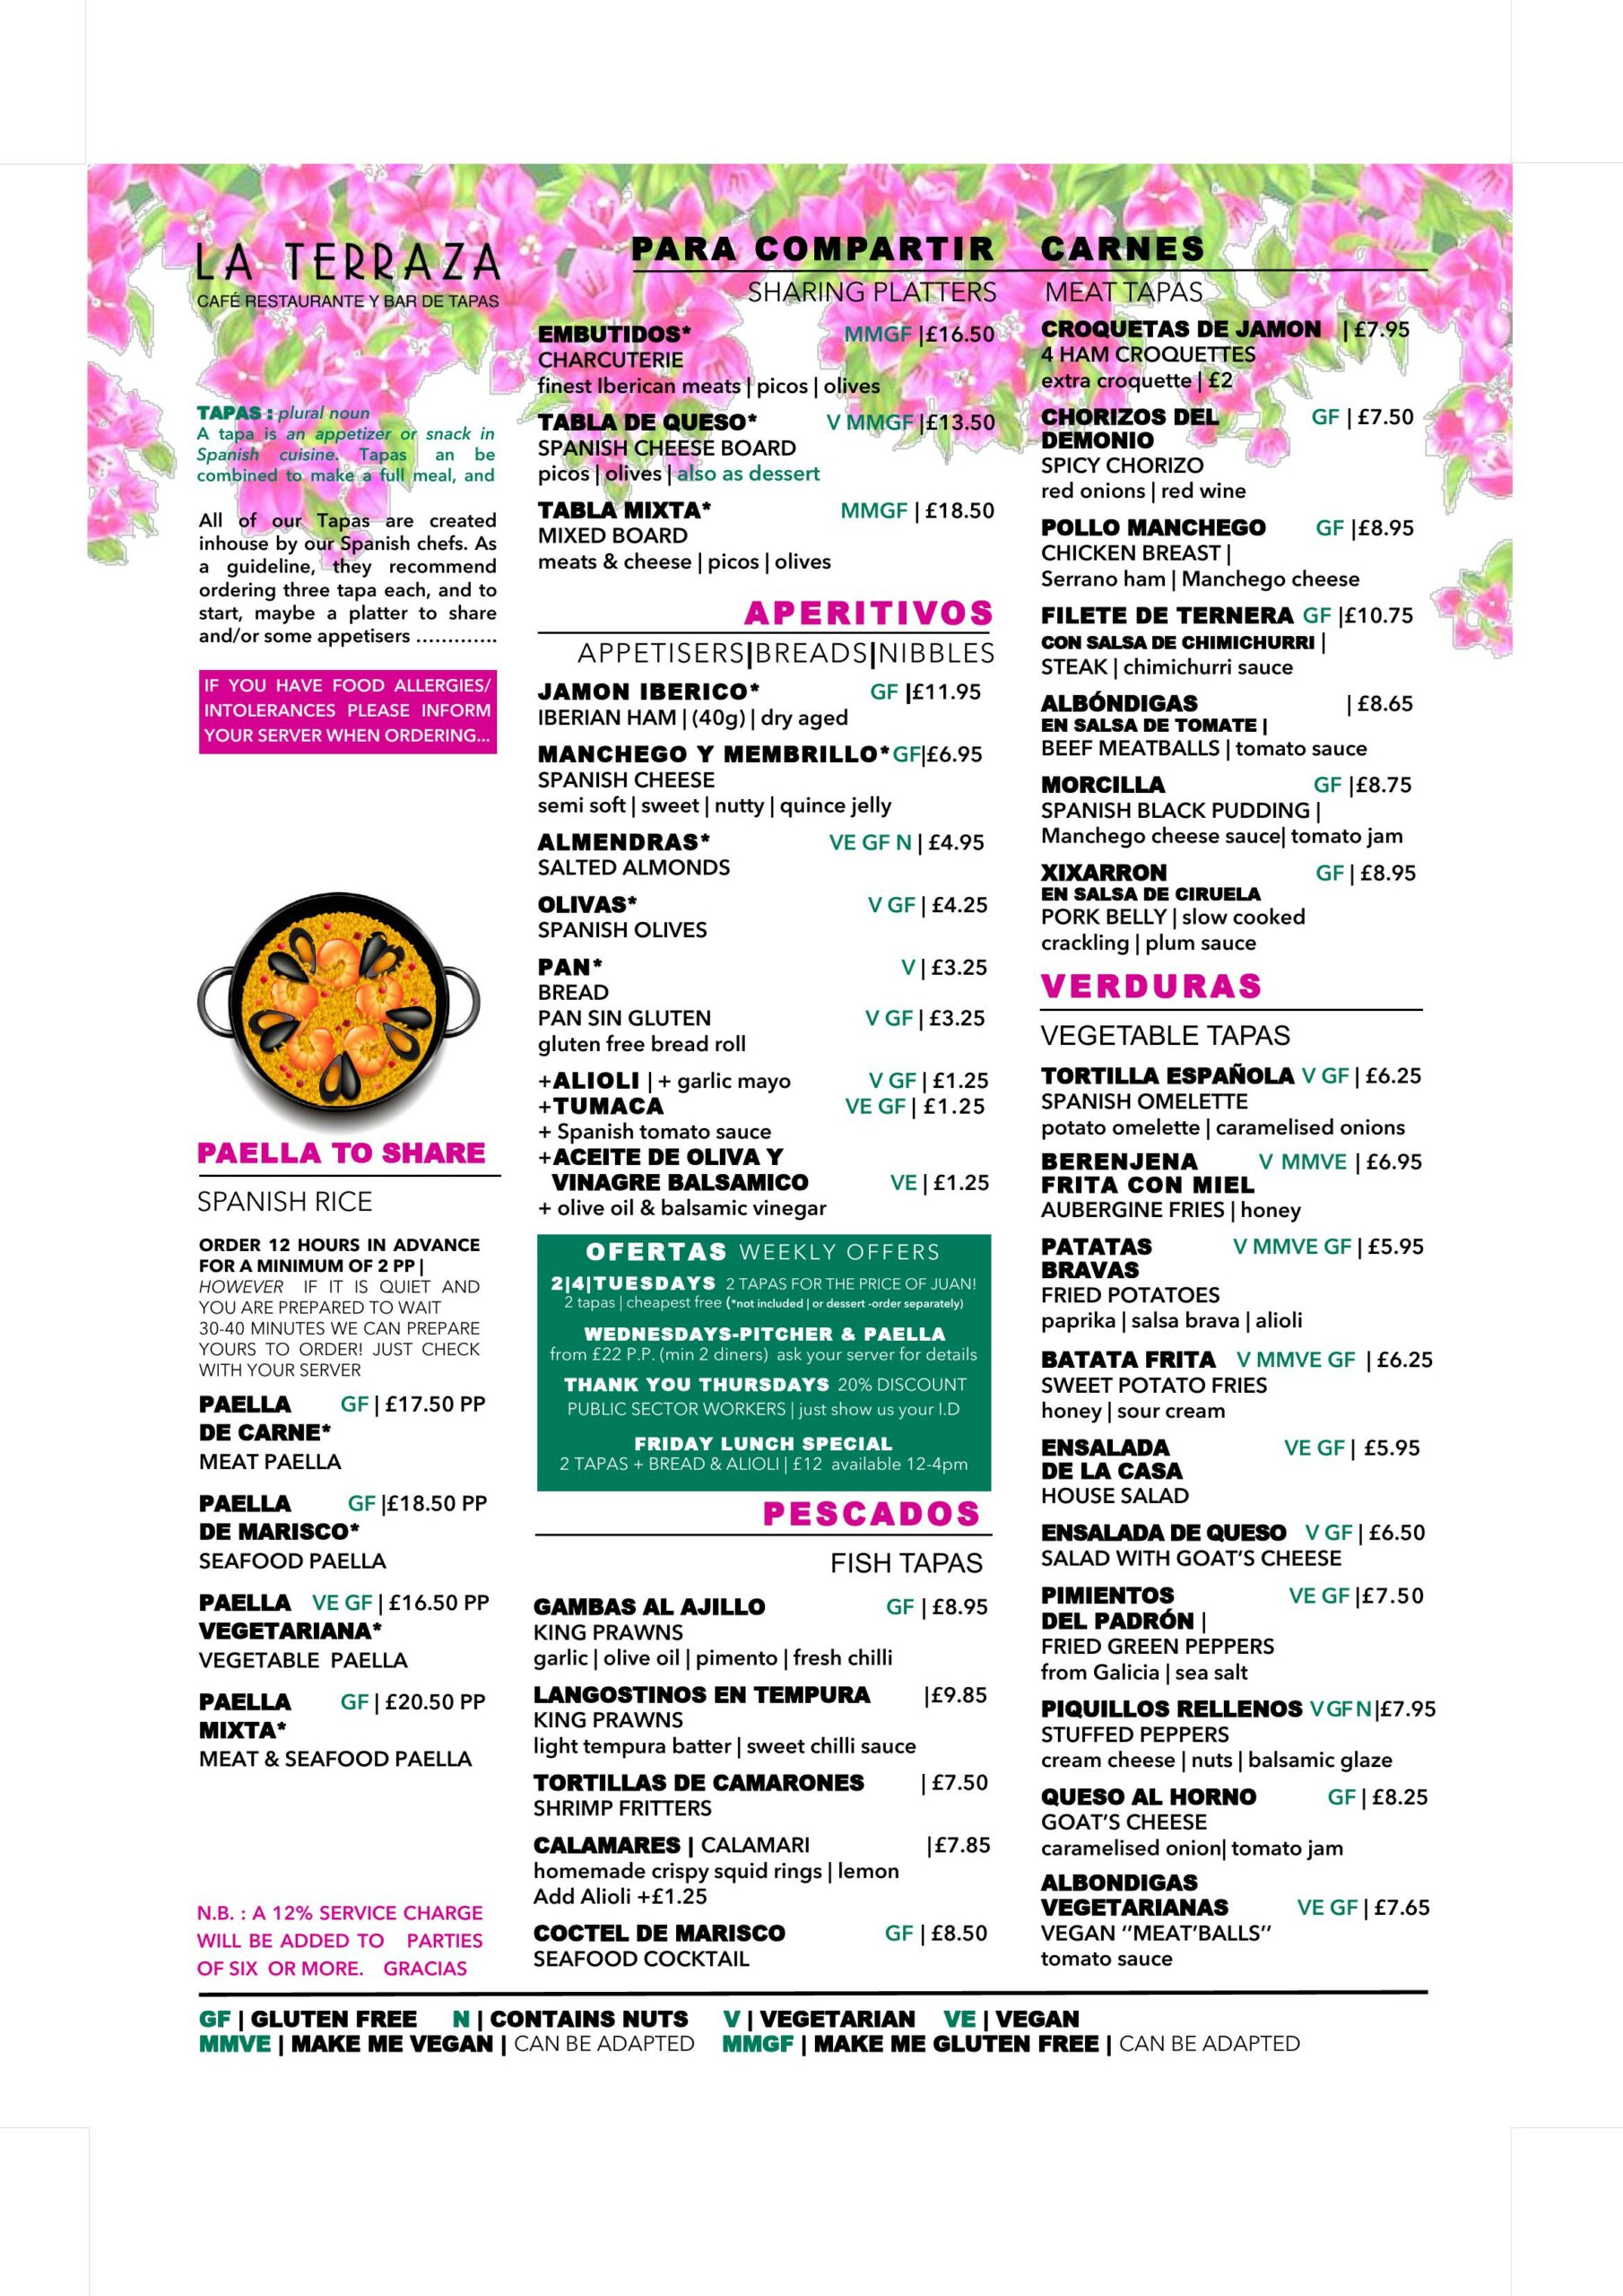 La Terraza Tapas Bar - main menu